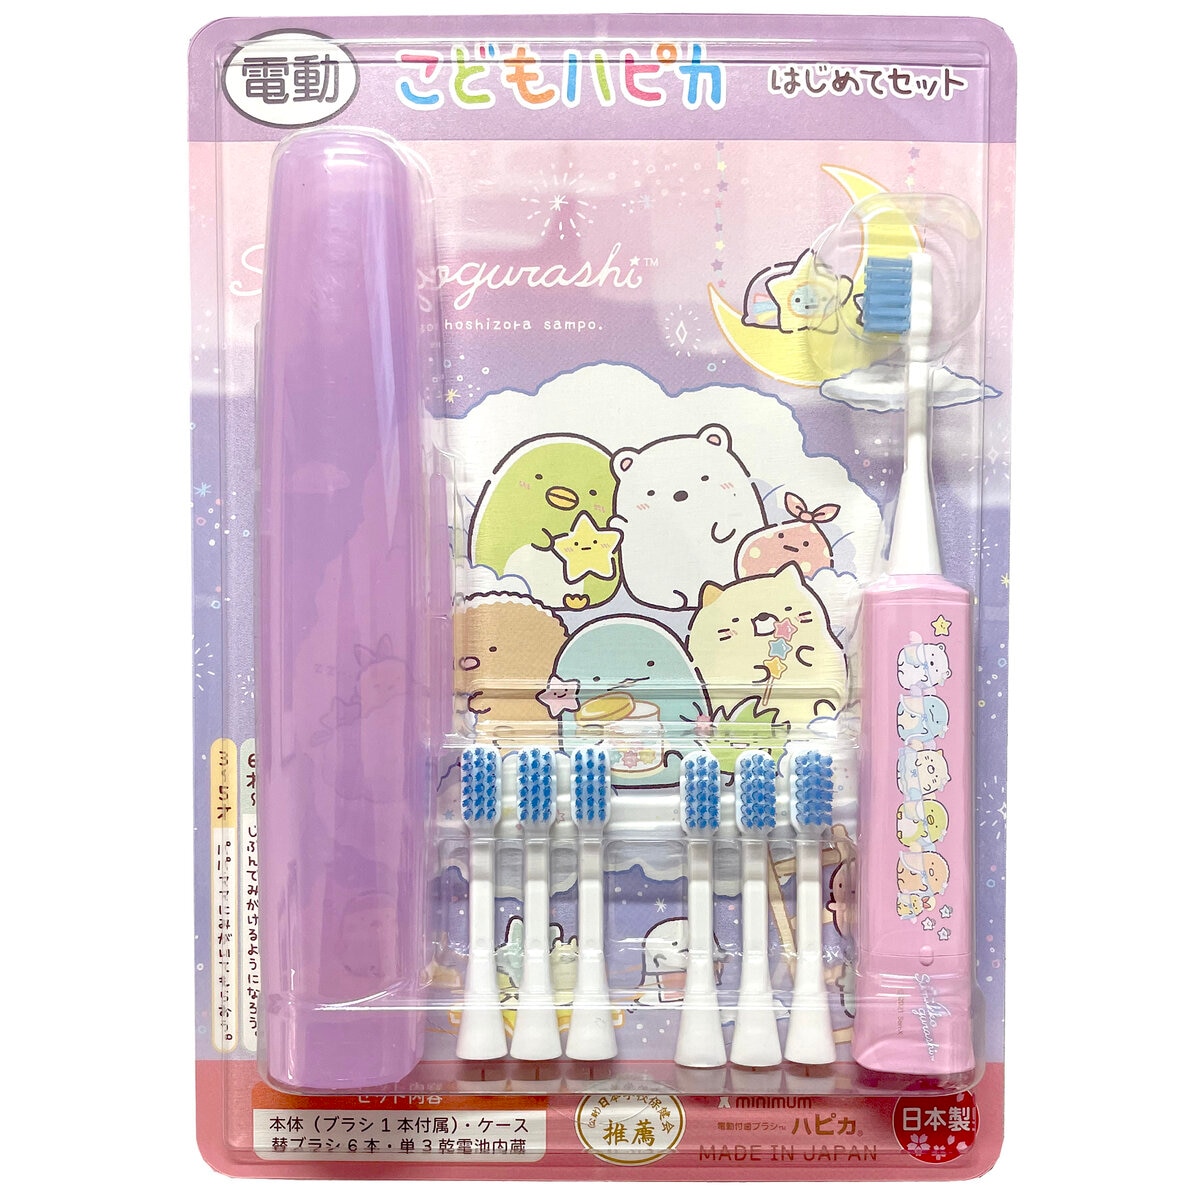 こどもハピカ はじめてセットキャラクター 電動歯ブラシ 本体 + 替ブラシ6本 | Costco Japan